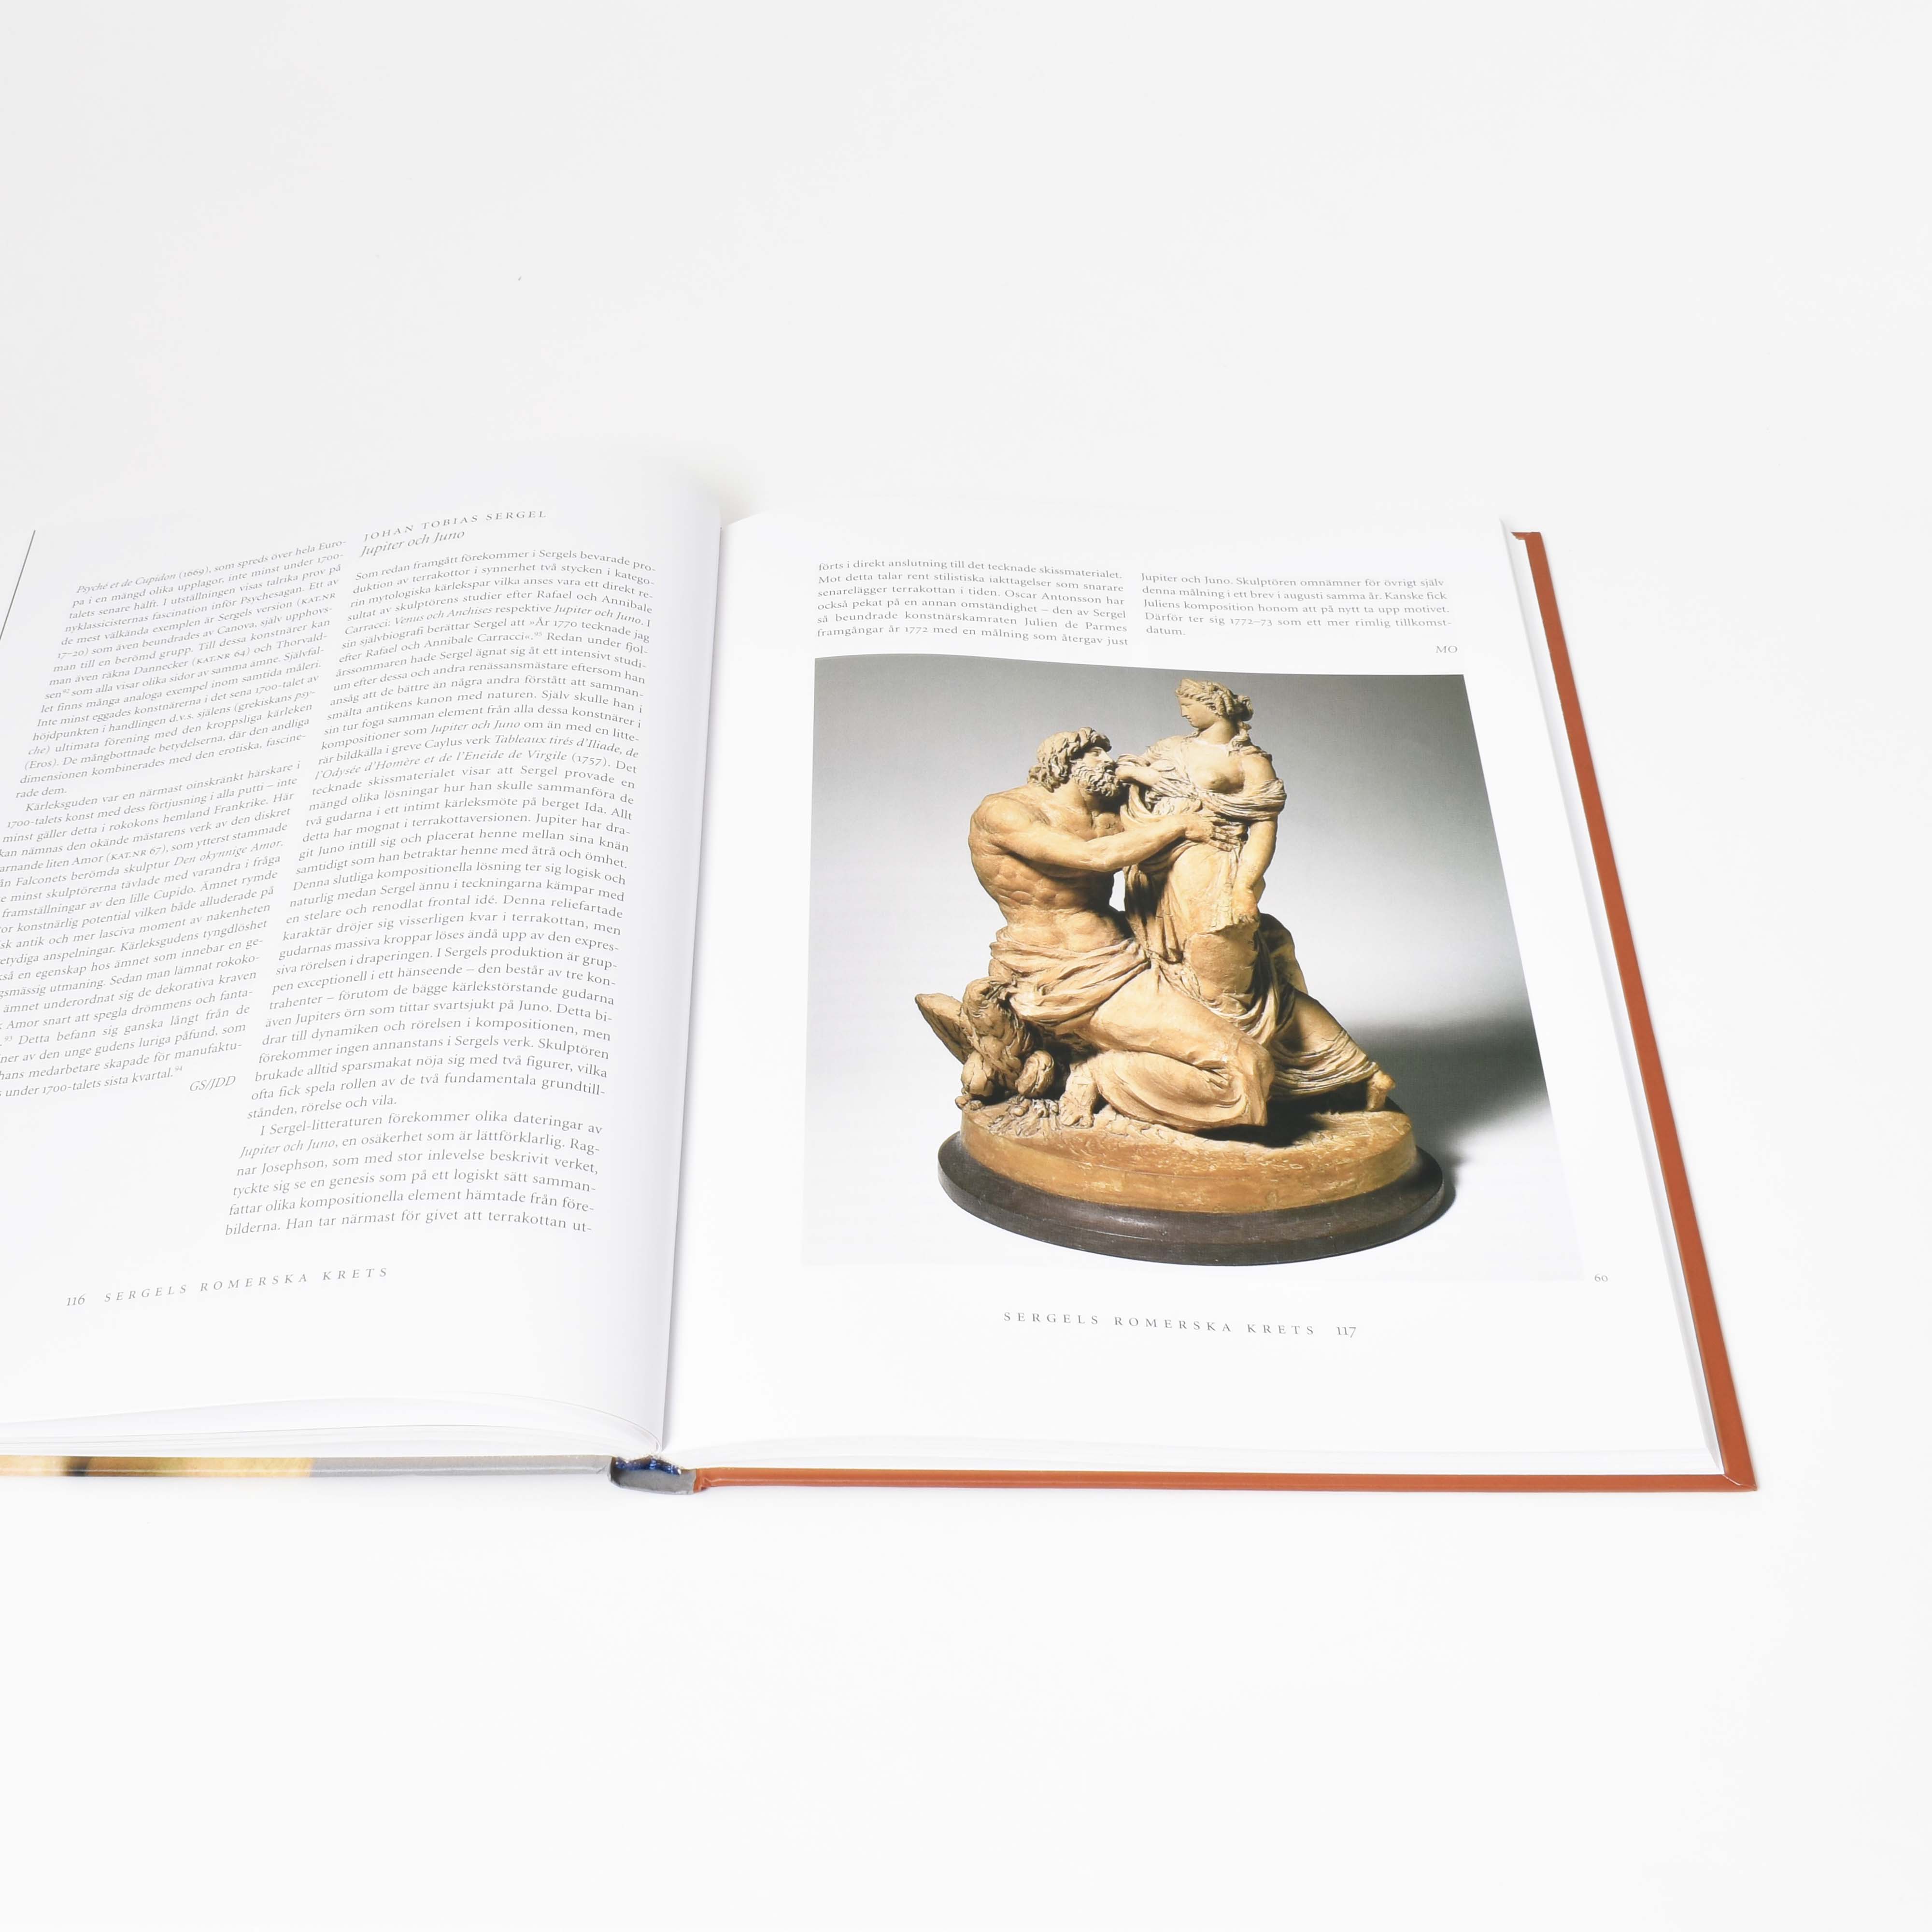 uppslag i boken "Sergel och hans romerska krets" med terrakotta skulptur